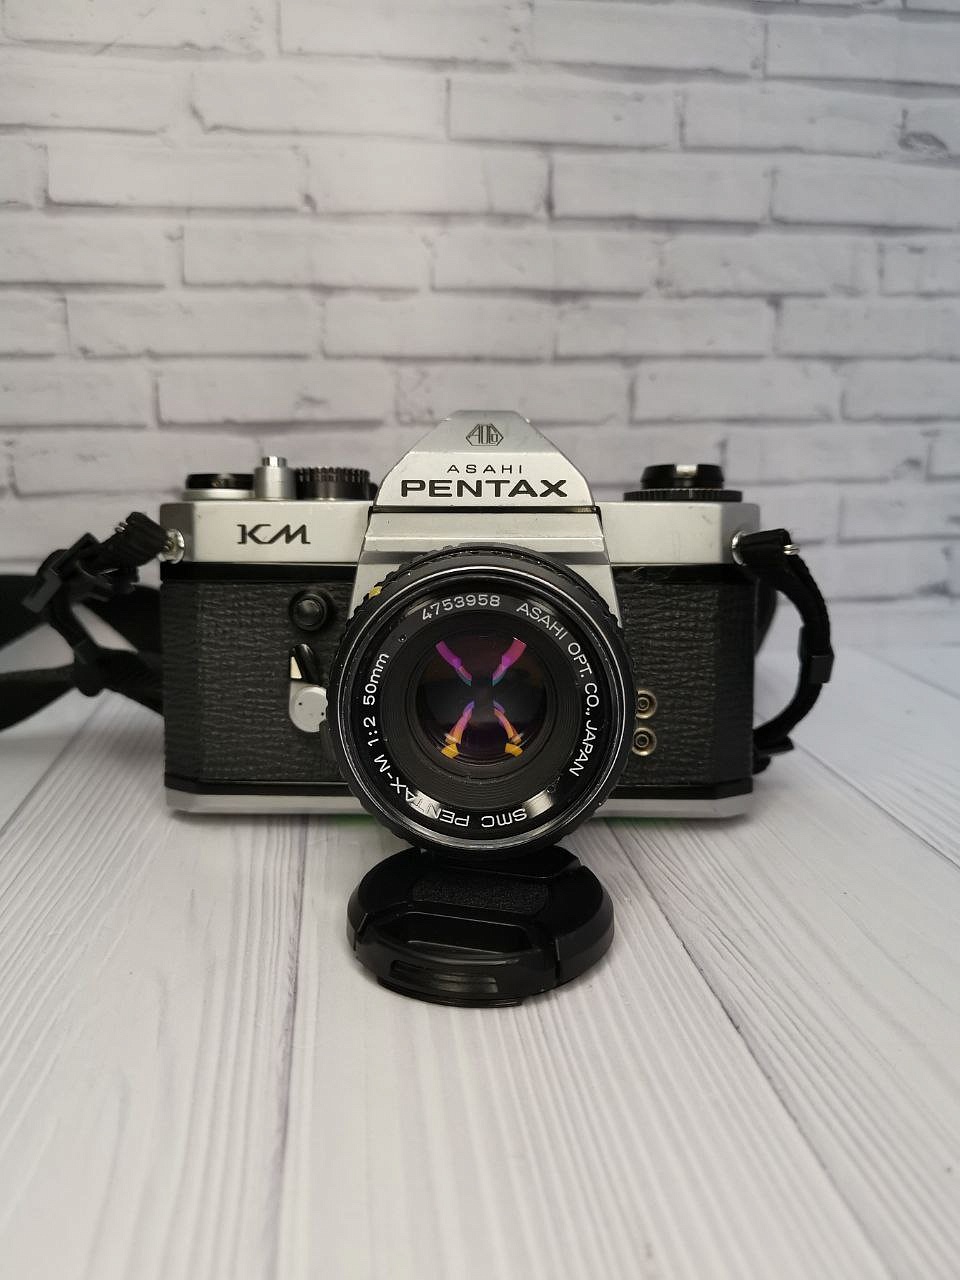 Pentax KM + SMC Pentax-M 50 mm f/2 фото №4